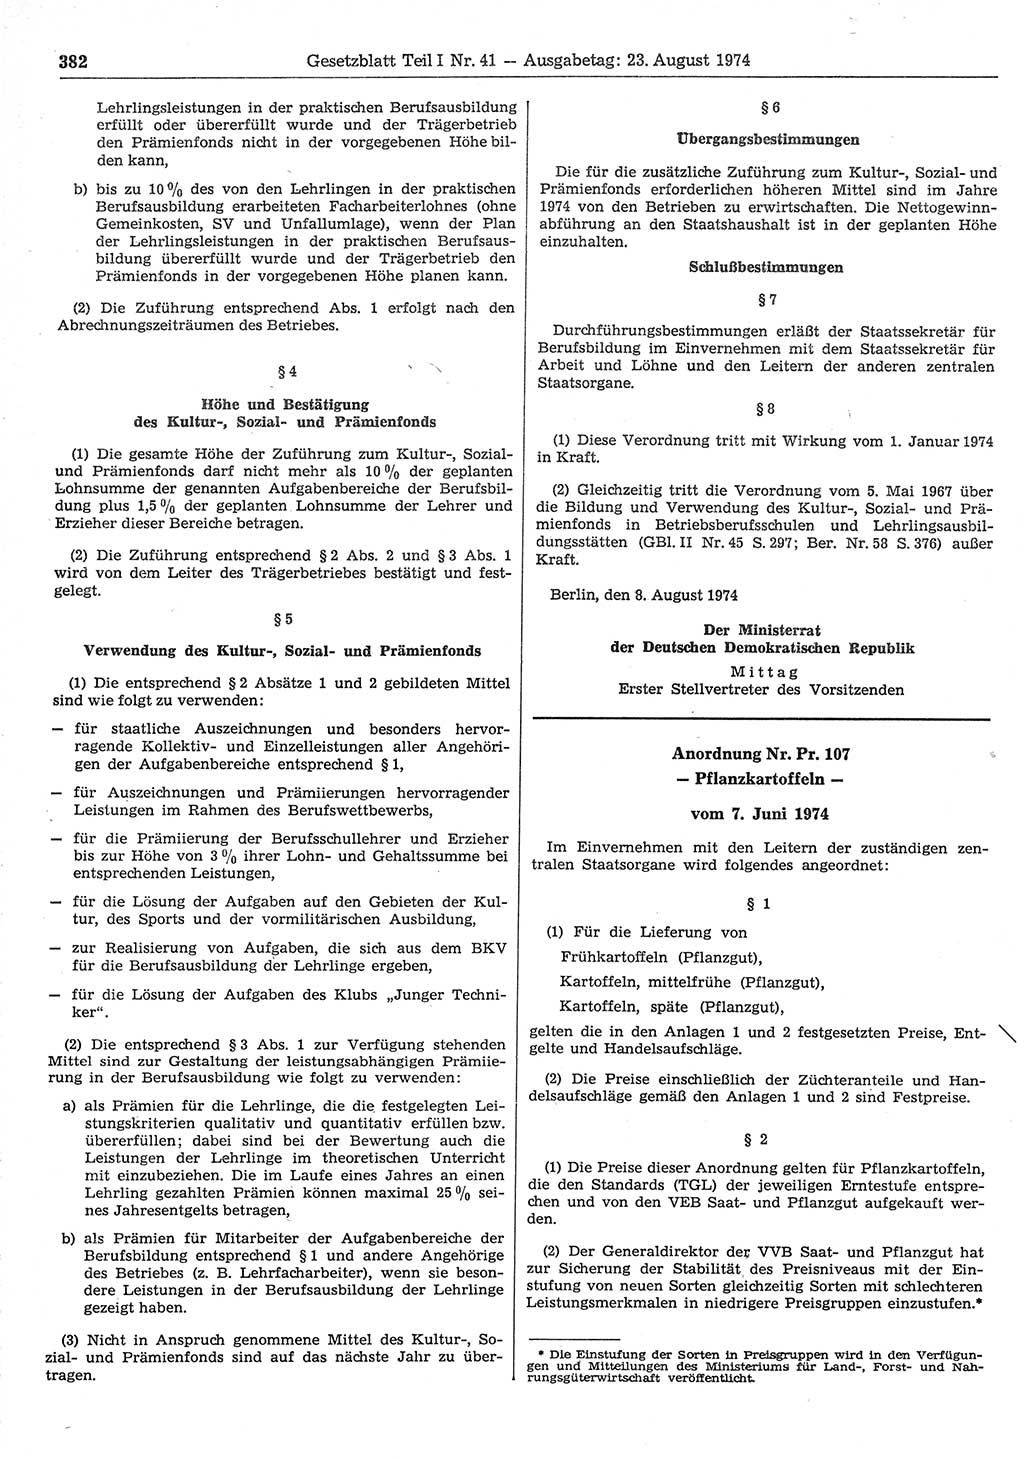 Gesetzblatt (GBl.) der Deutschen Demokratischen Republik (DDR) Teil Ⅰ 1974, Seite 382 (GBl. DDR Ⅰ 1974, S. 382)